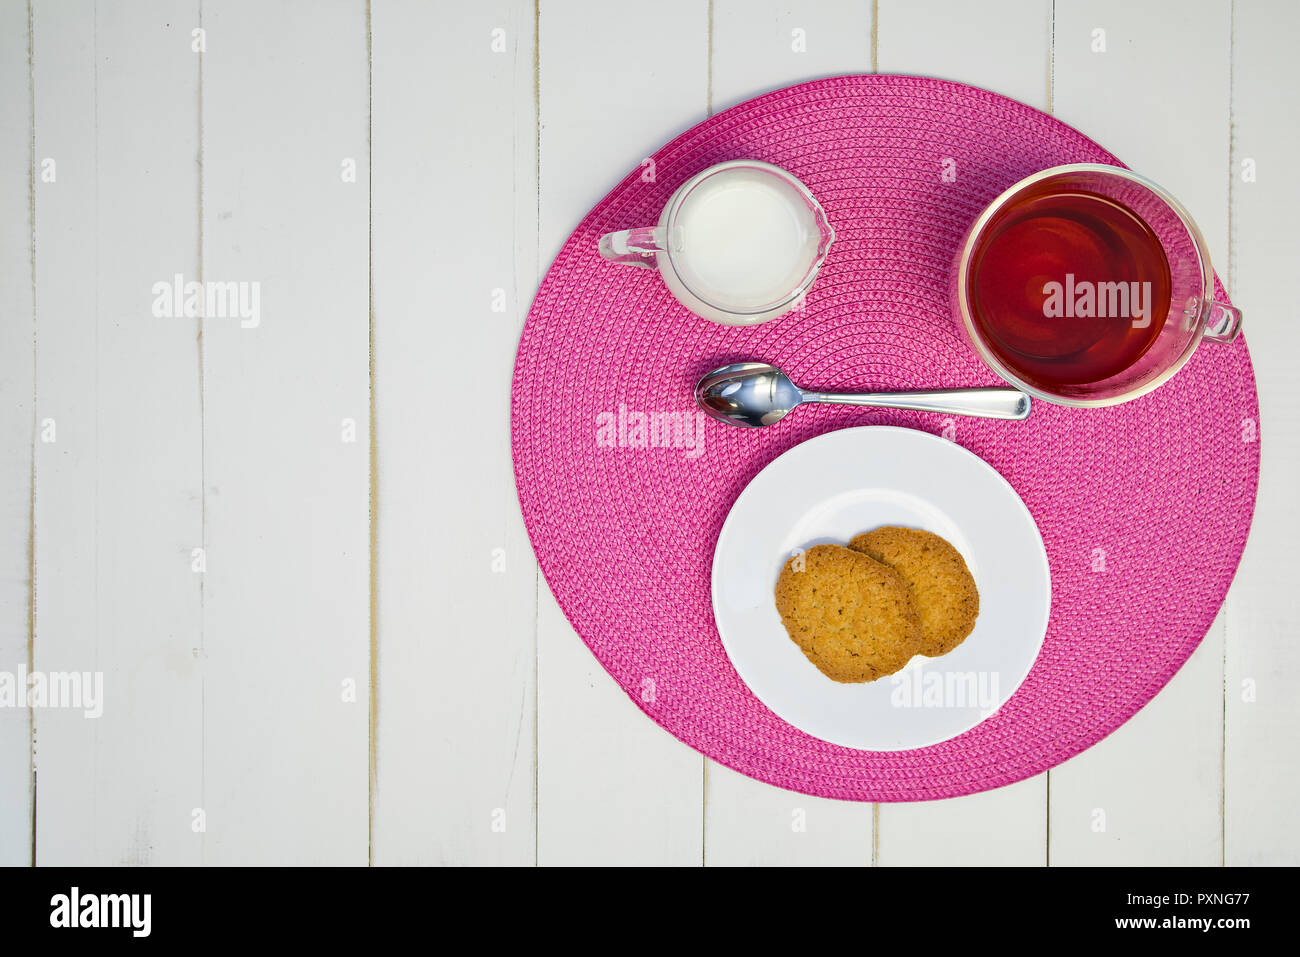 Heißen Tee, Kekse und Milch sind auf einem rosa Tischset auf eine weiße Tafel Tabelle angeordnet. Die Anordnung ist off-center. Stockfoto